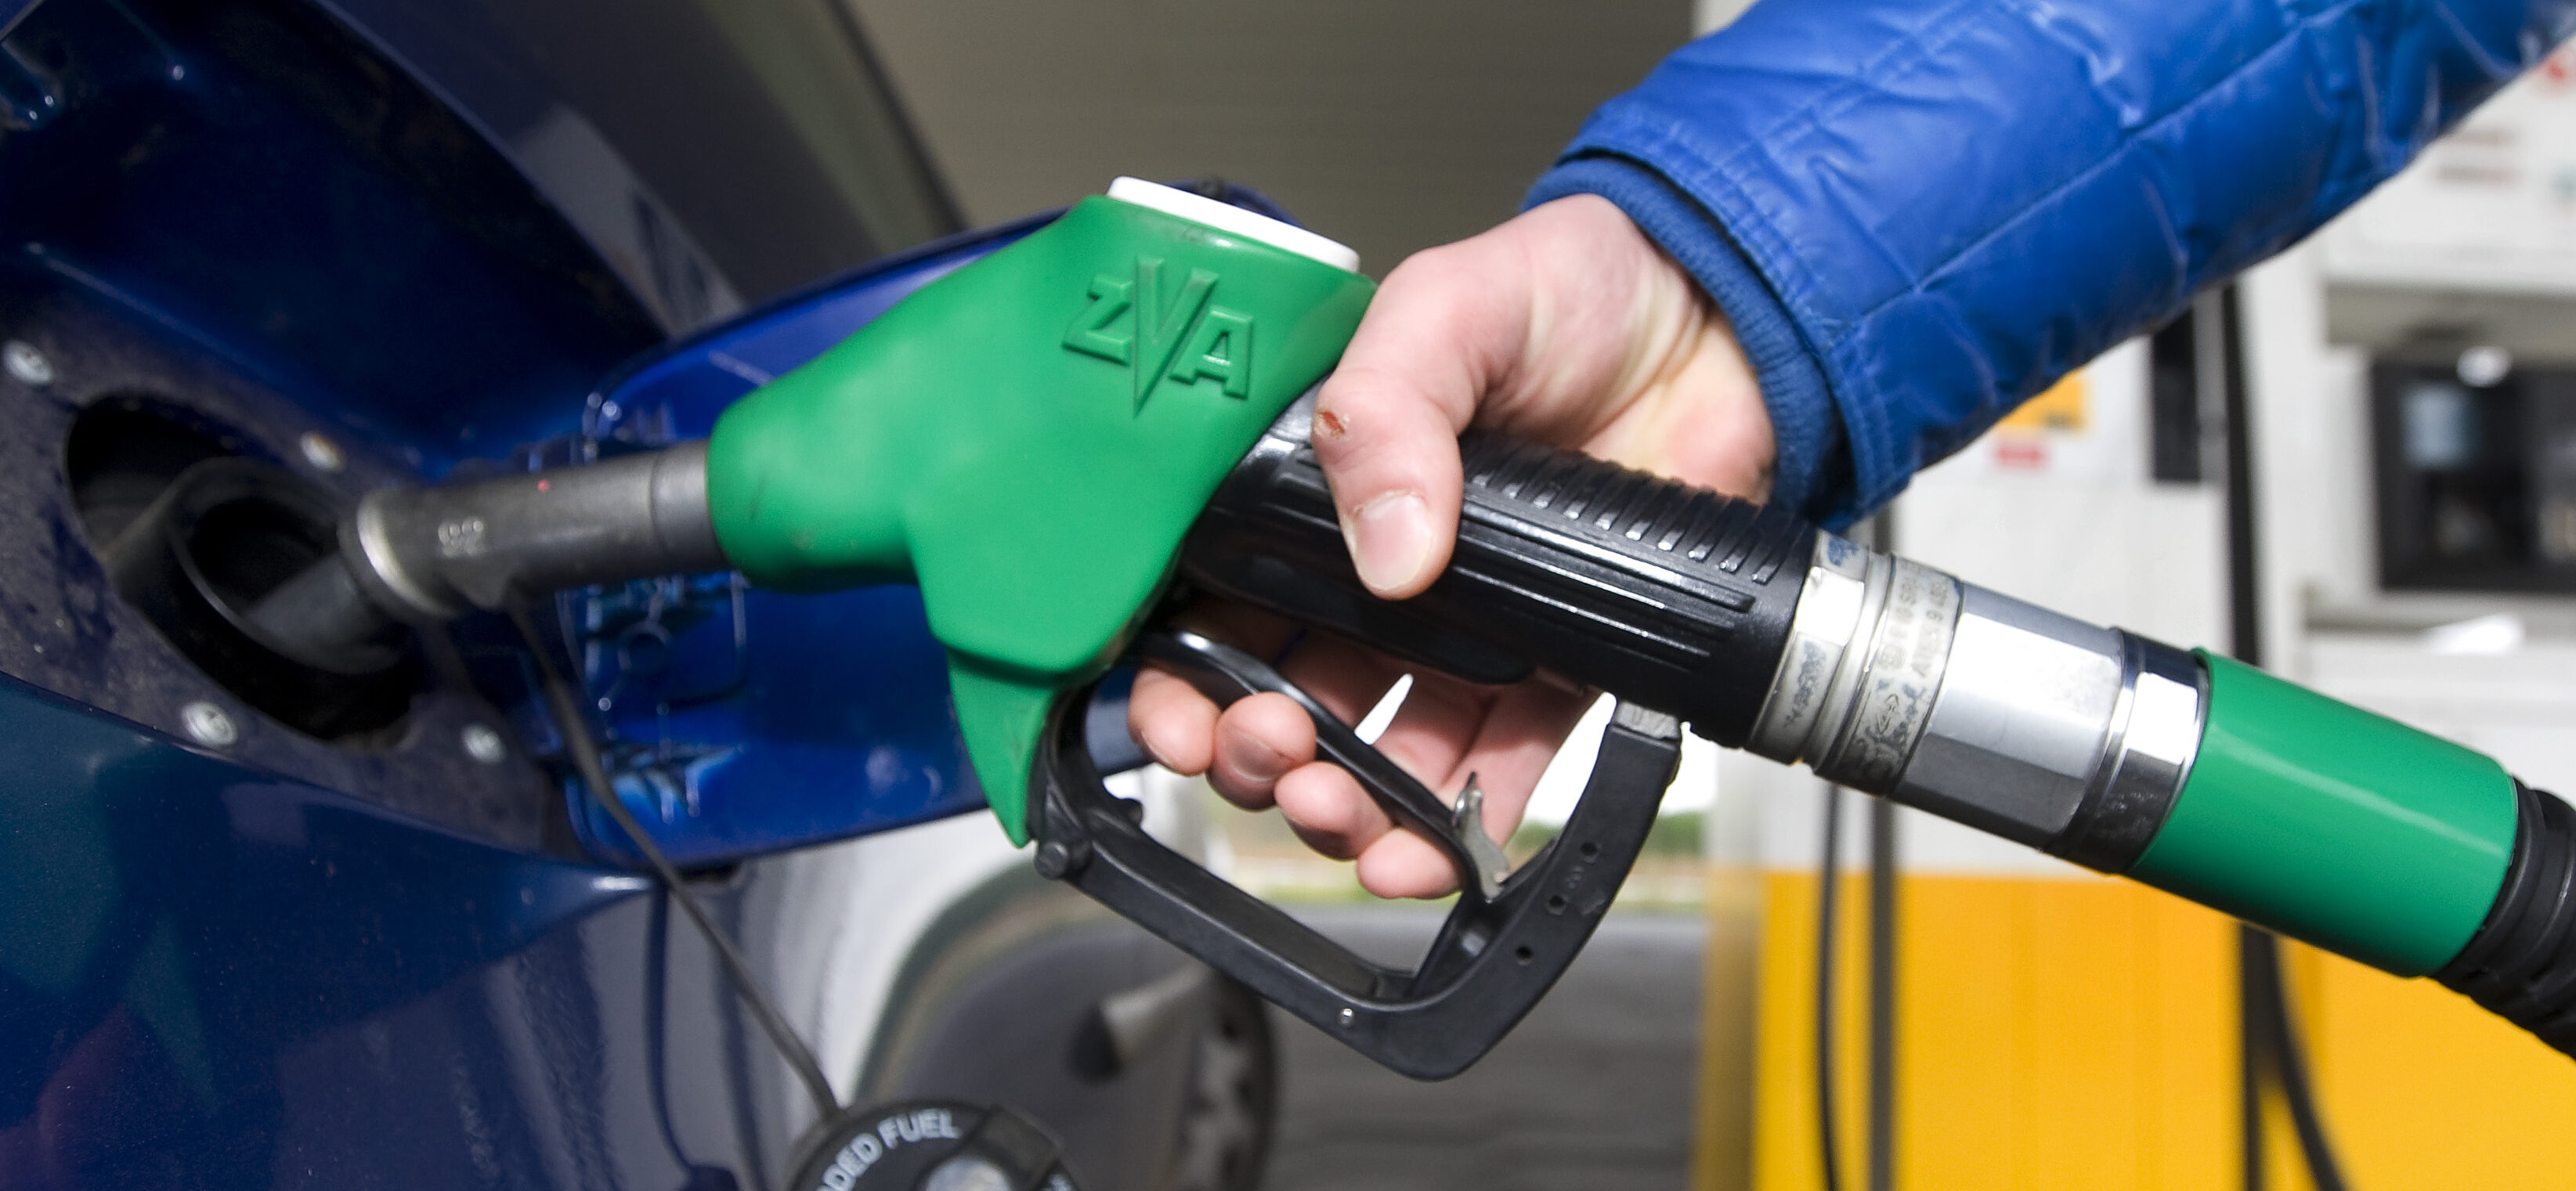 benzine, diesel, prijs, tanken, inflatie, energie, boodschappen